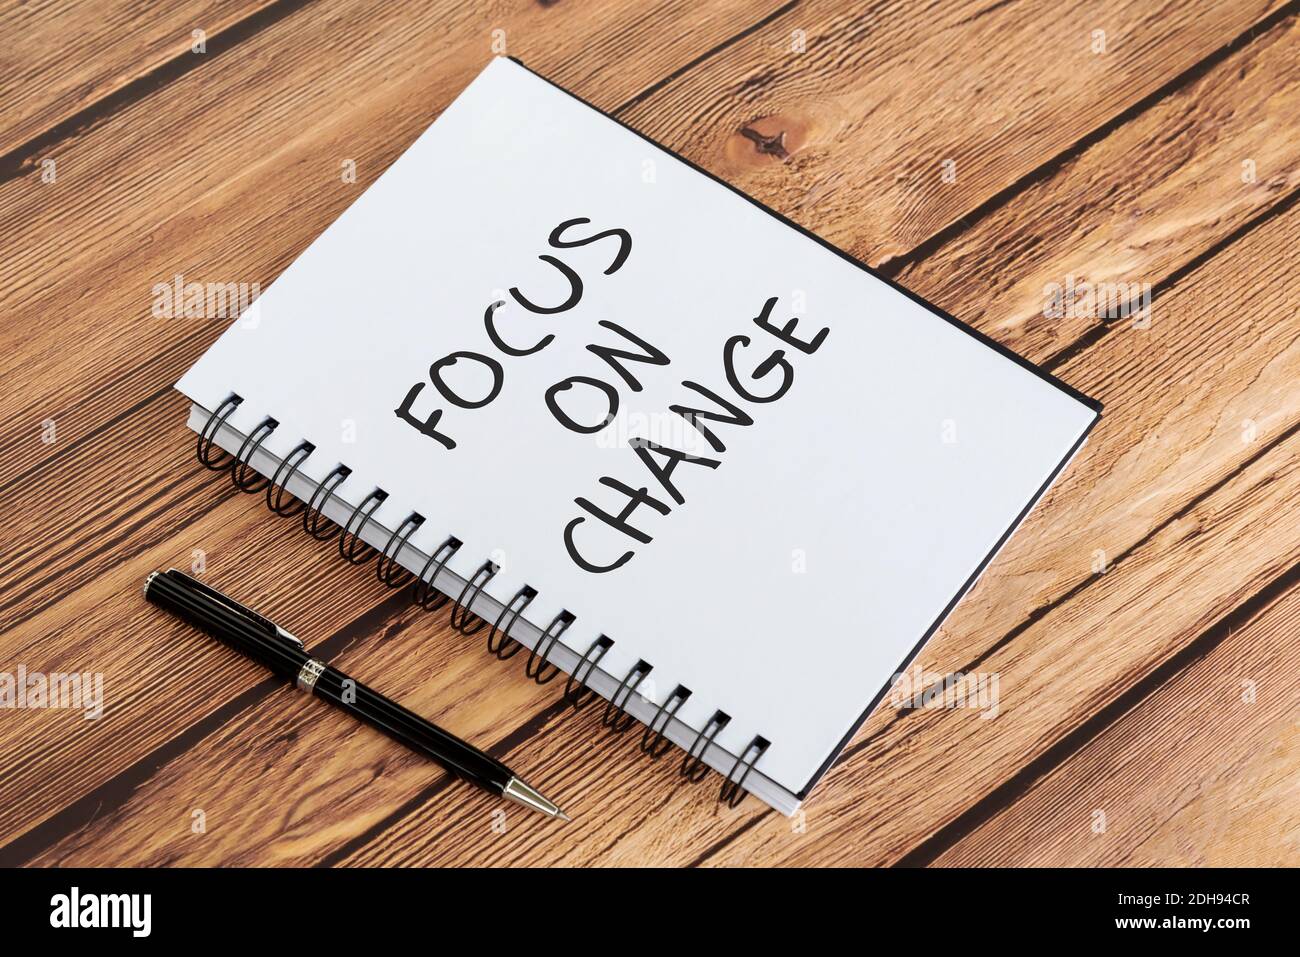 Inspirierende Zitate auf Notizblock - Fokus auf Veränderung. Holzhintergrund. Stockfoto